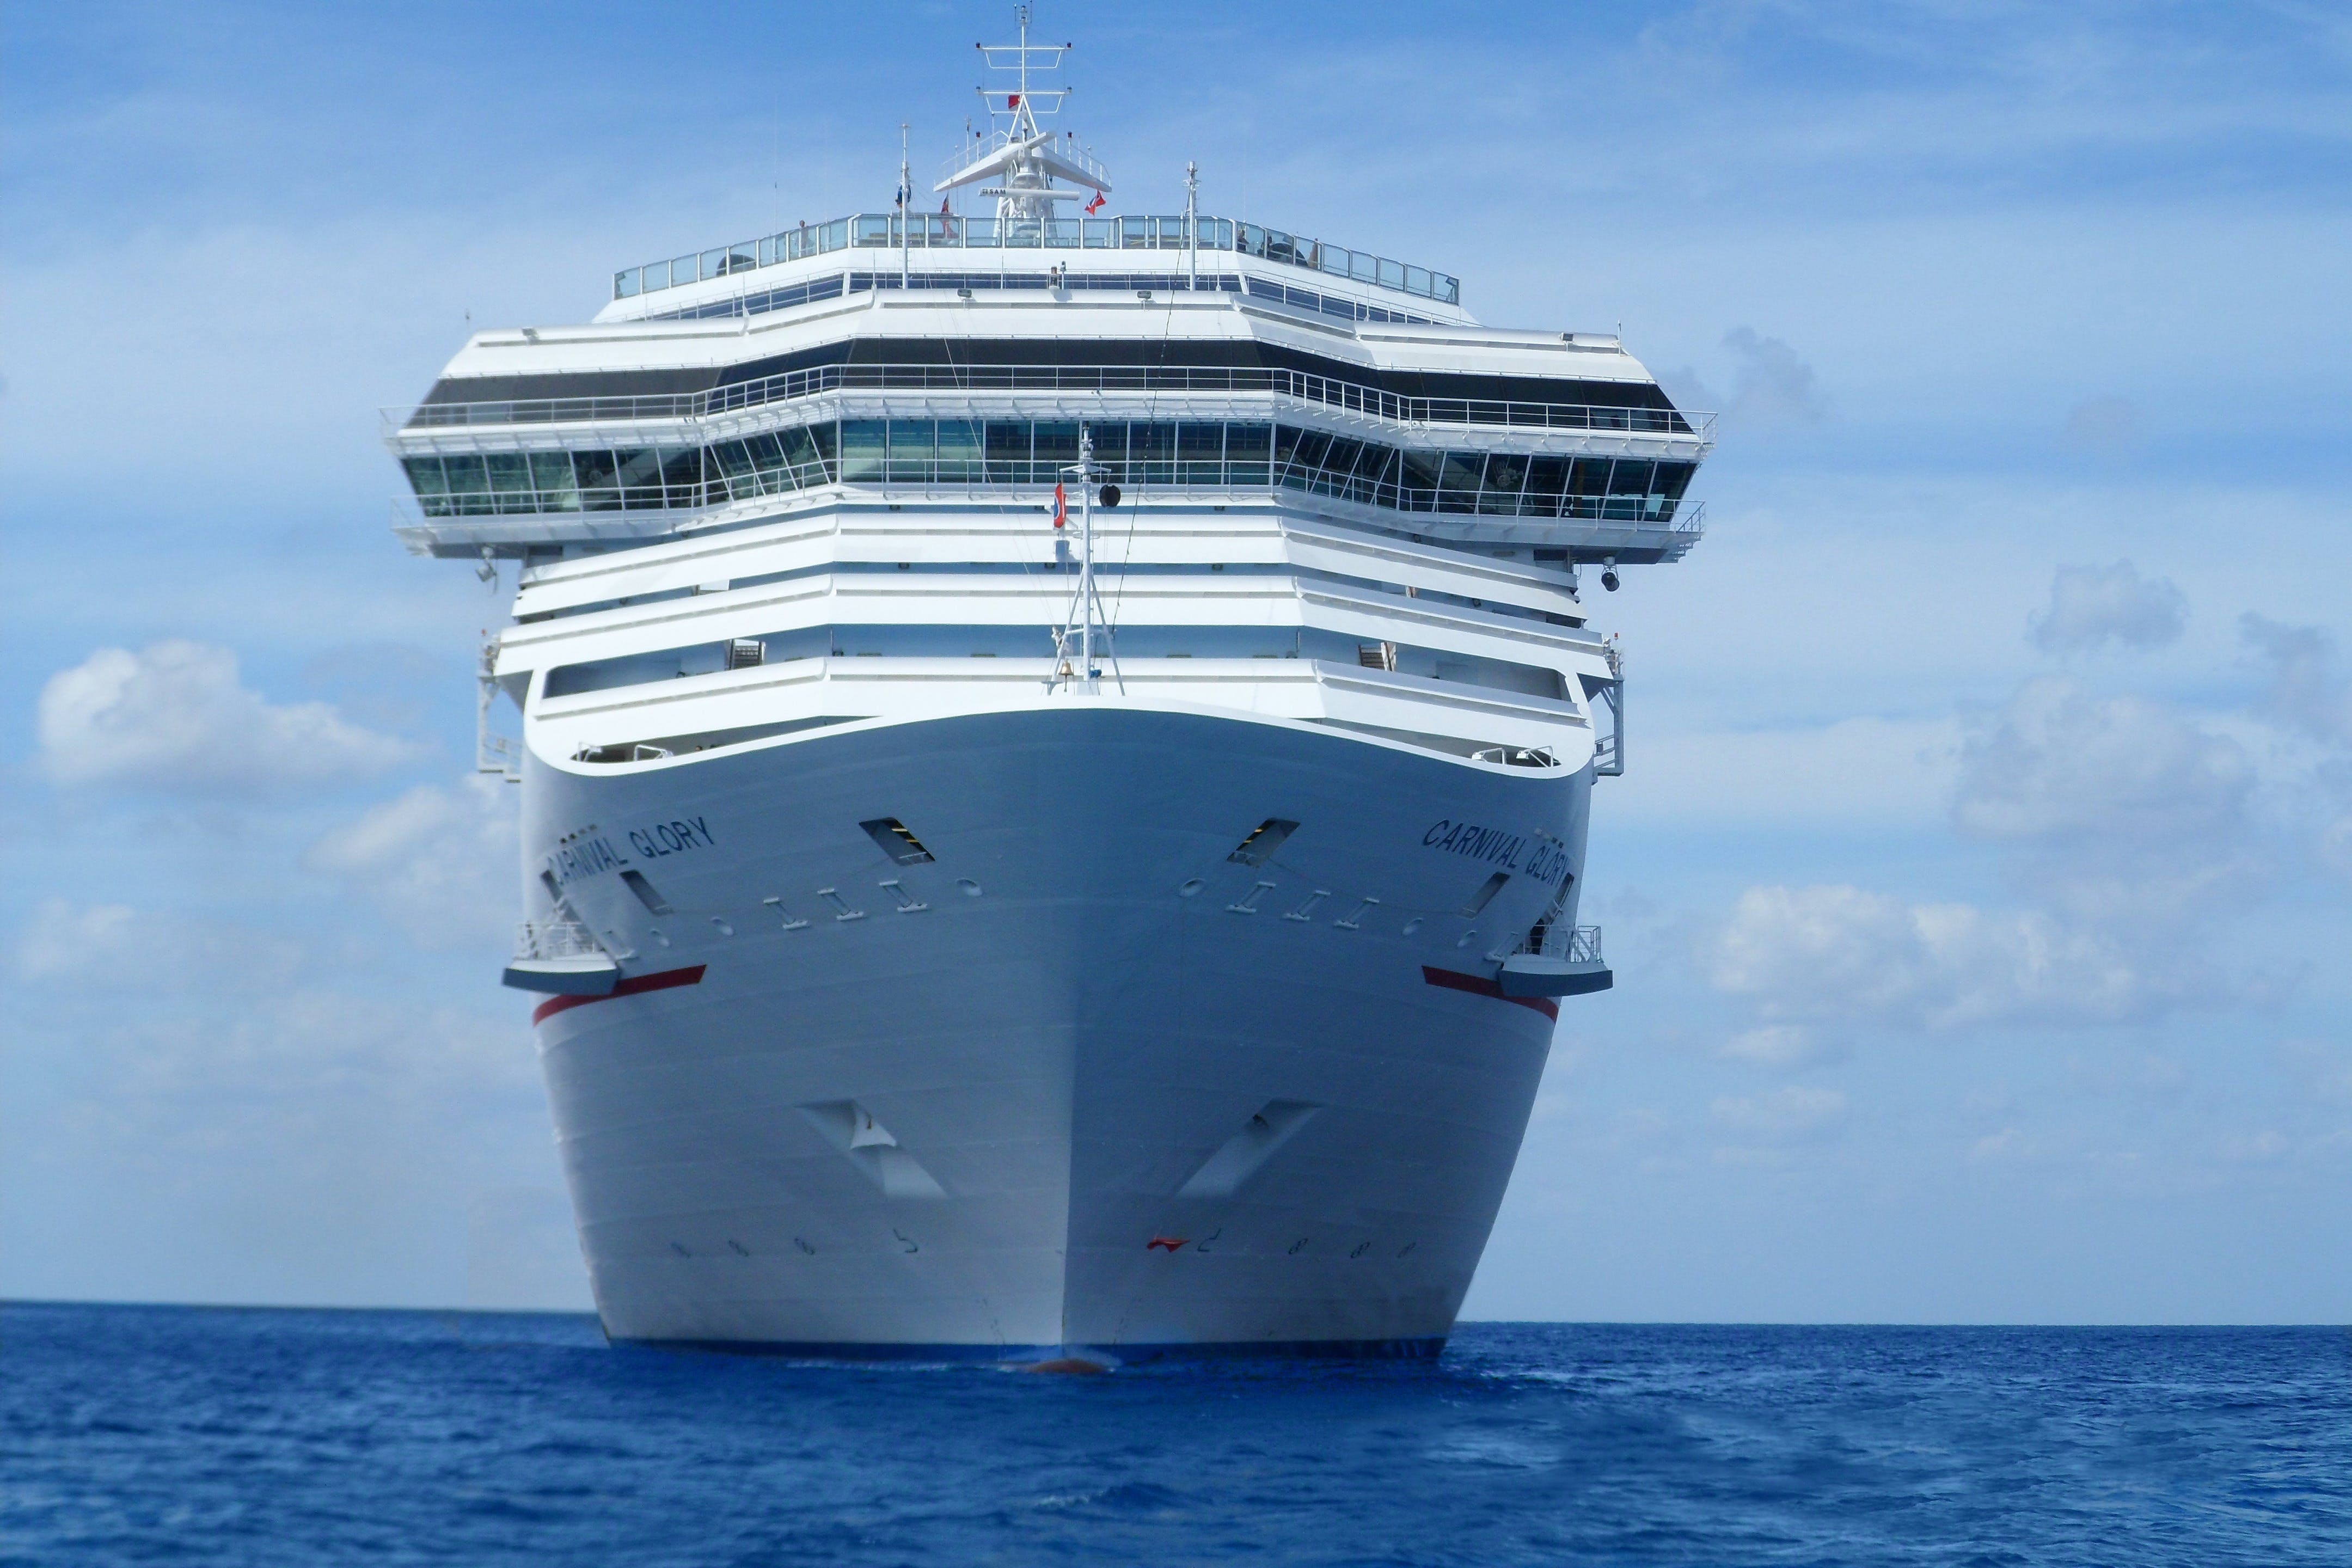 Free White Cruise Ship Stock Photo